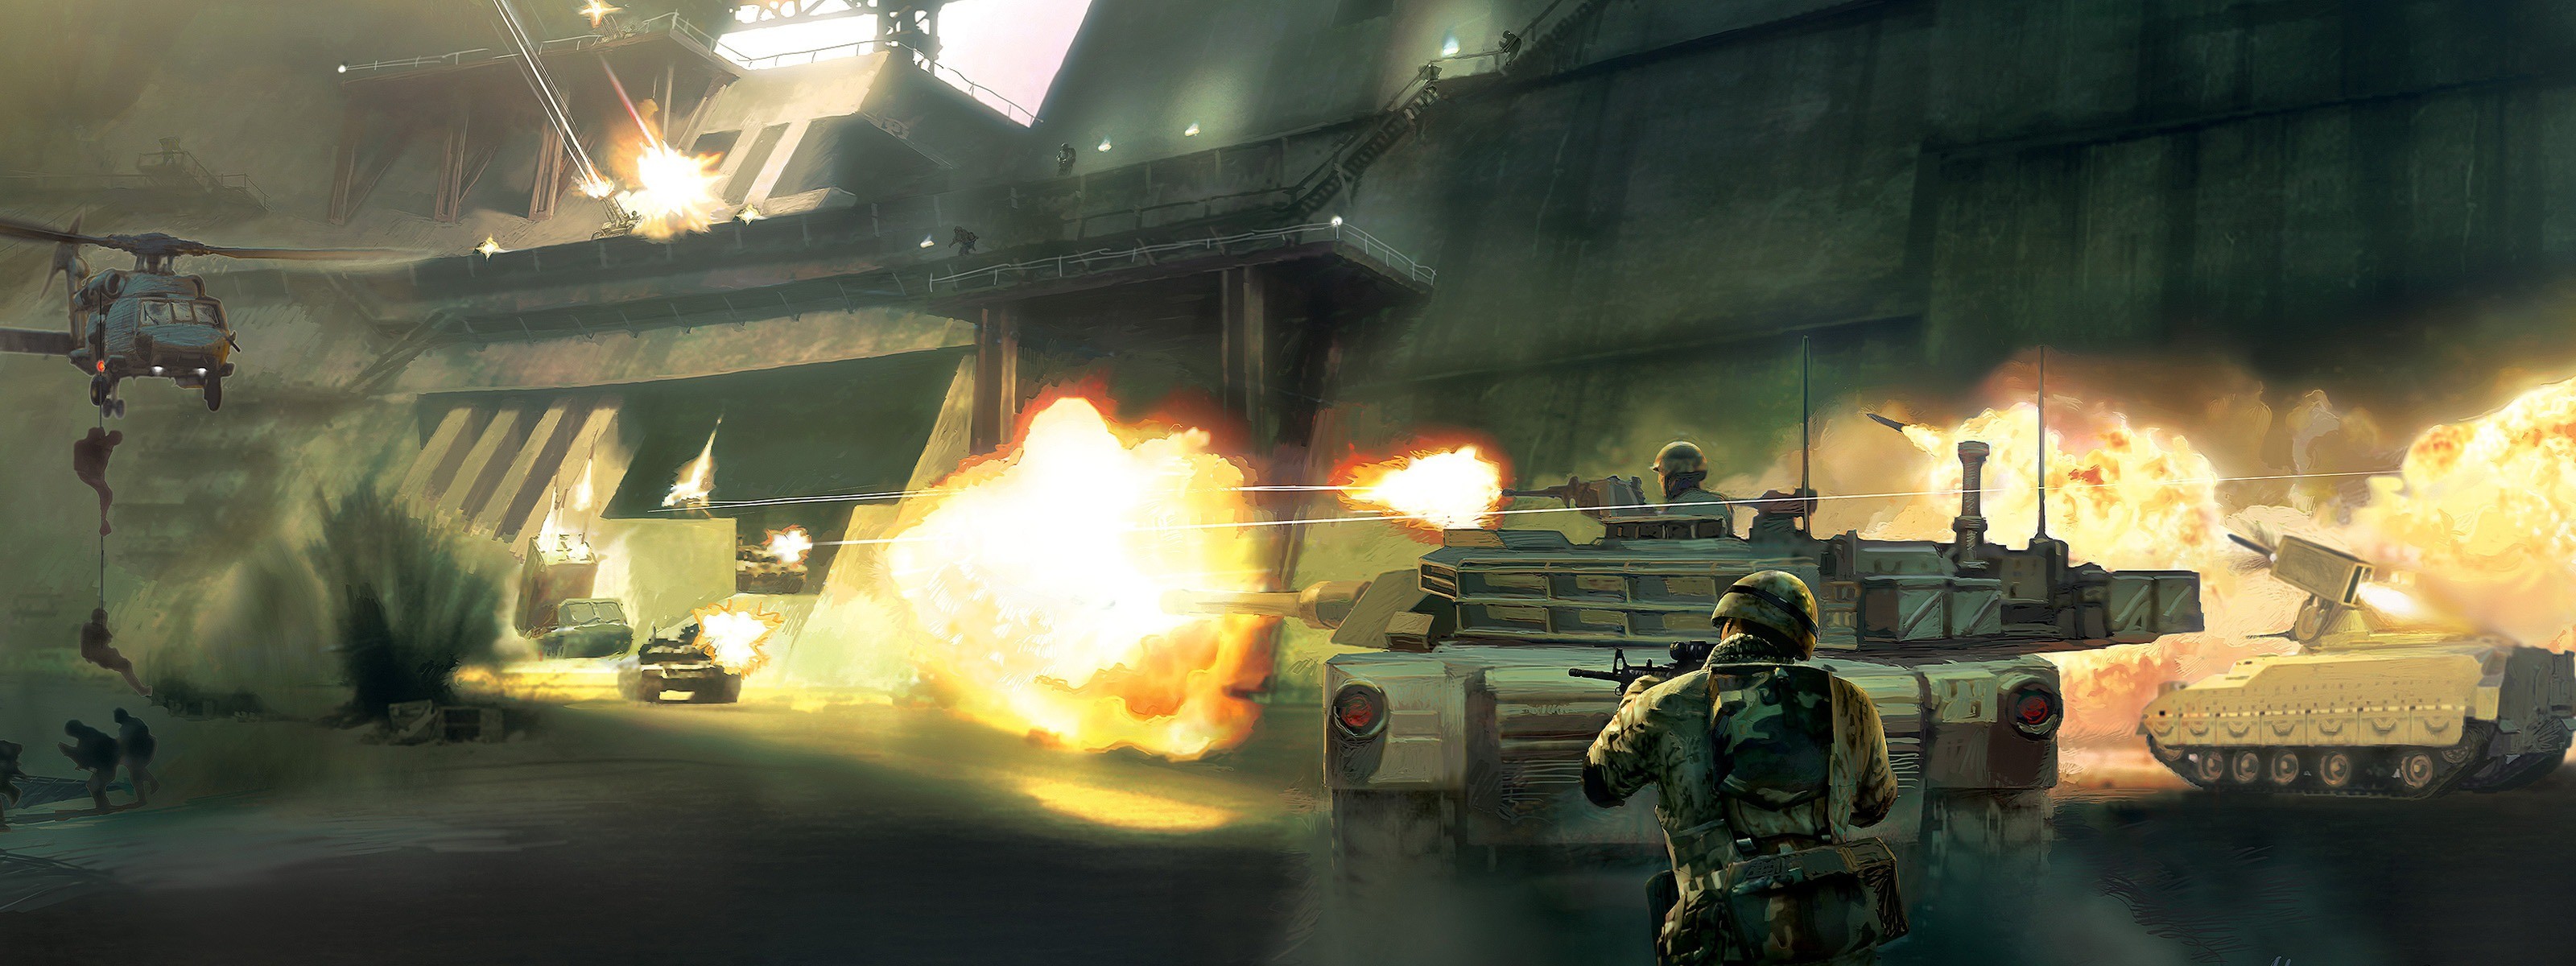 Battlefield 2: Modern Combat Art